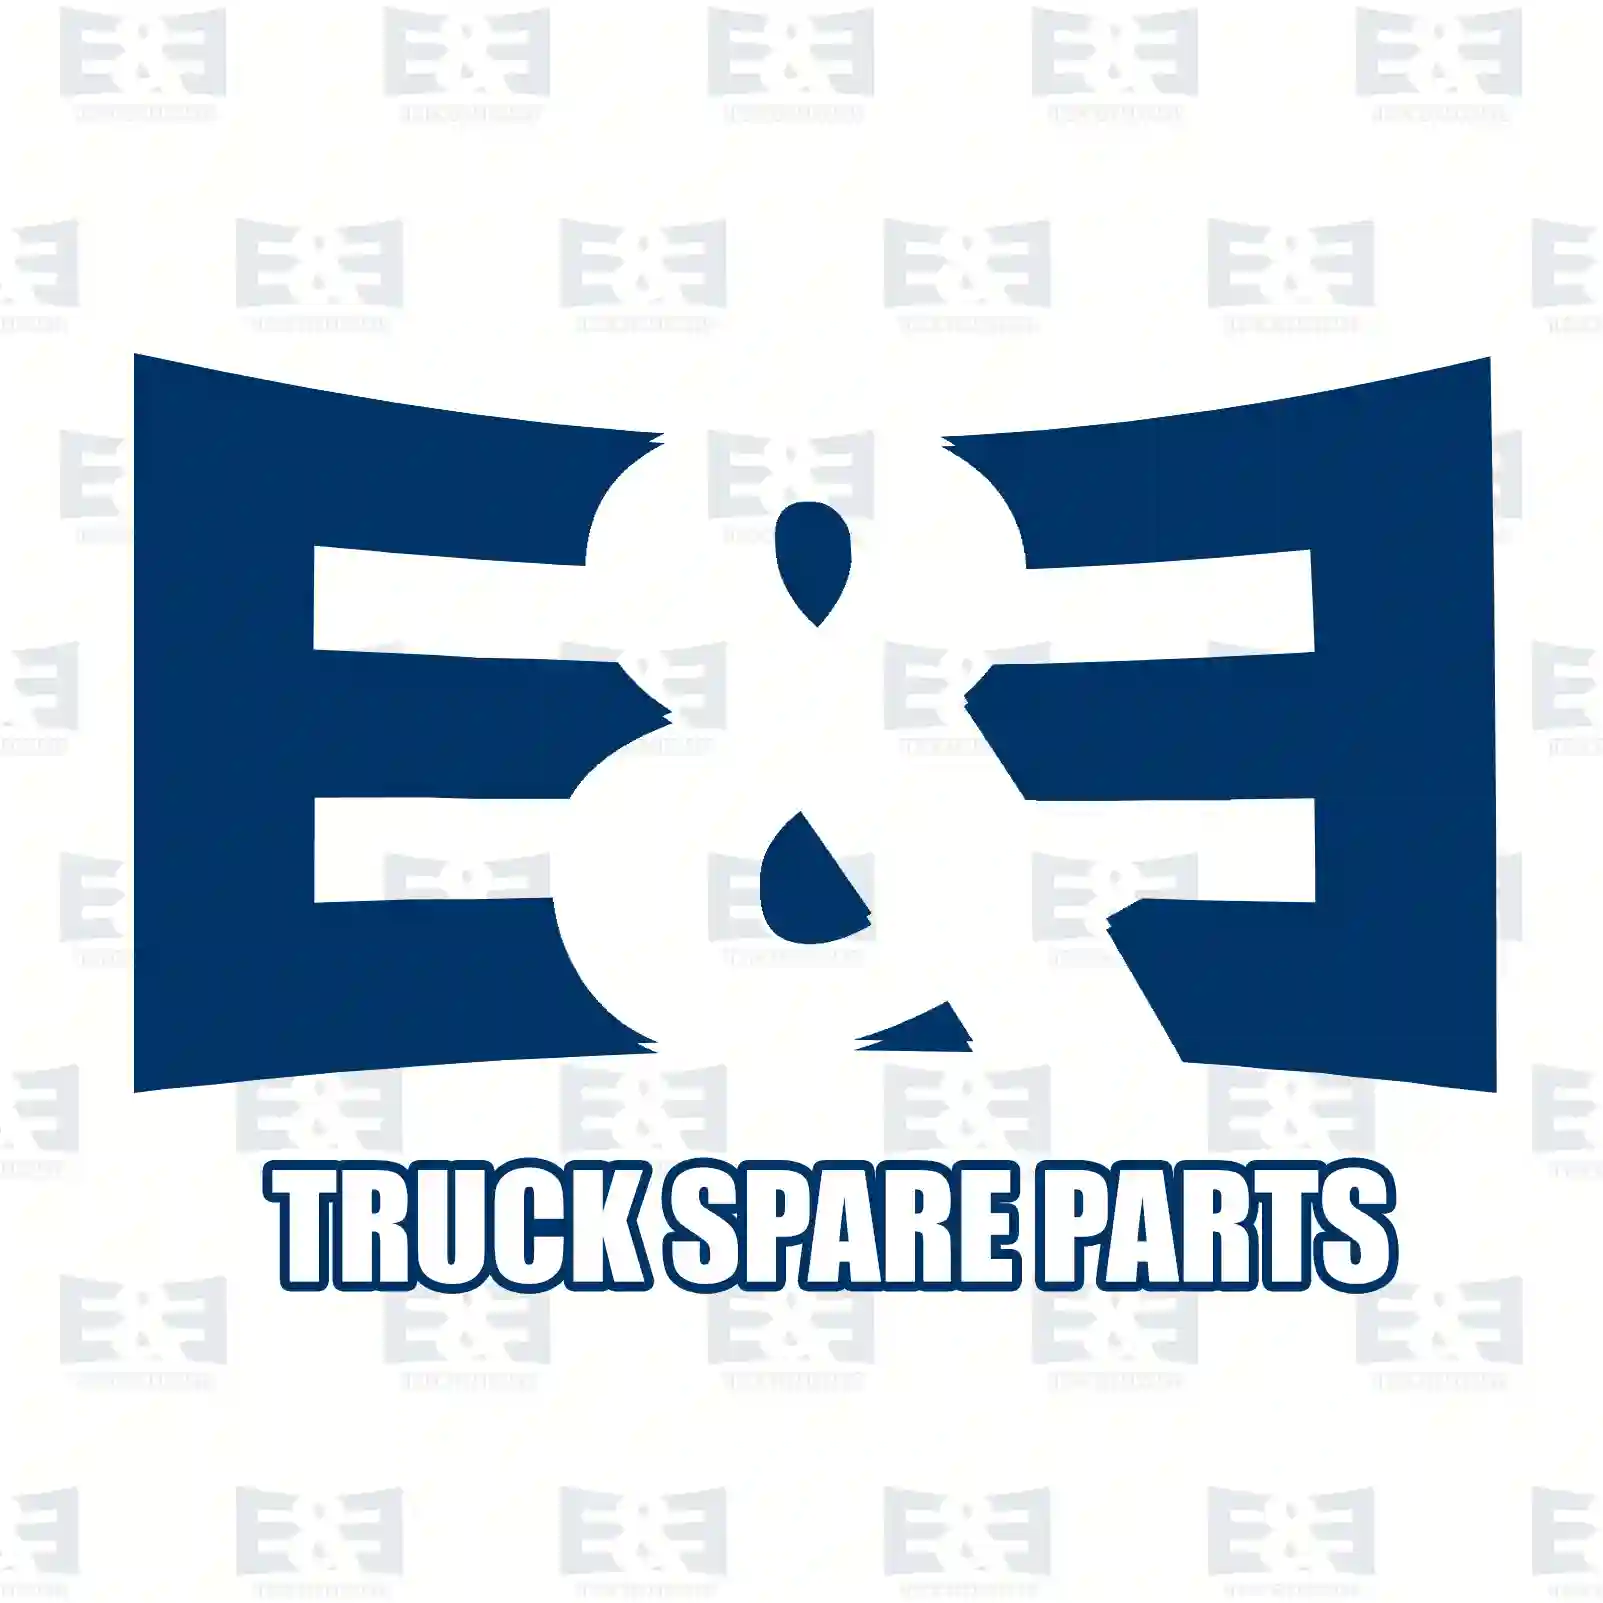 Shock absorber, 2E2283340, 423016002, LEI1650050052, 21215742, 21215742, 21215807, 21221306, 21215442, 21215607, 21215742, 21215751, 21215807, 21221306, 21221306K, 902022, 912022, 912643 ||  2E2283340 E&E Truck Spare Parts | Truck Spare Parts, Auotomotive Spare Parts Shock absorber, 2E2283340, 423016002, LEI1650050052, 21215742, 21215742, 21215807, 21221306, 21215442, 21215607, 21215742, 21215751, 21215807, 21221306, 21221306K, 902022, 912022, 912643 ||  2E2283340 E&E Truck Spare Parts | Truck Spare Parts, Auotomotive Spare Parts